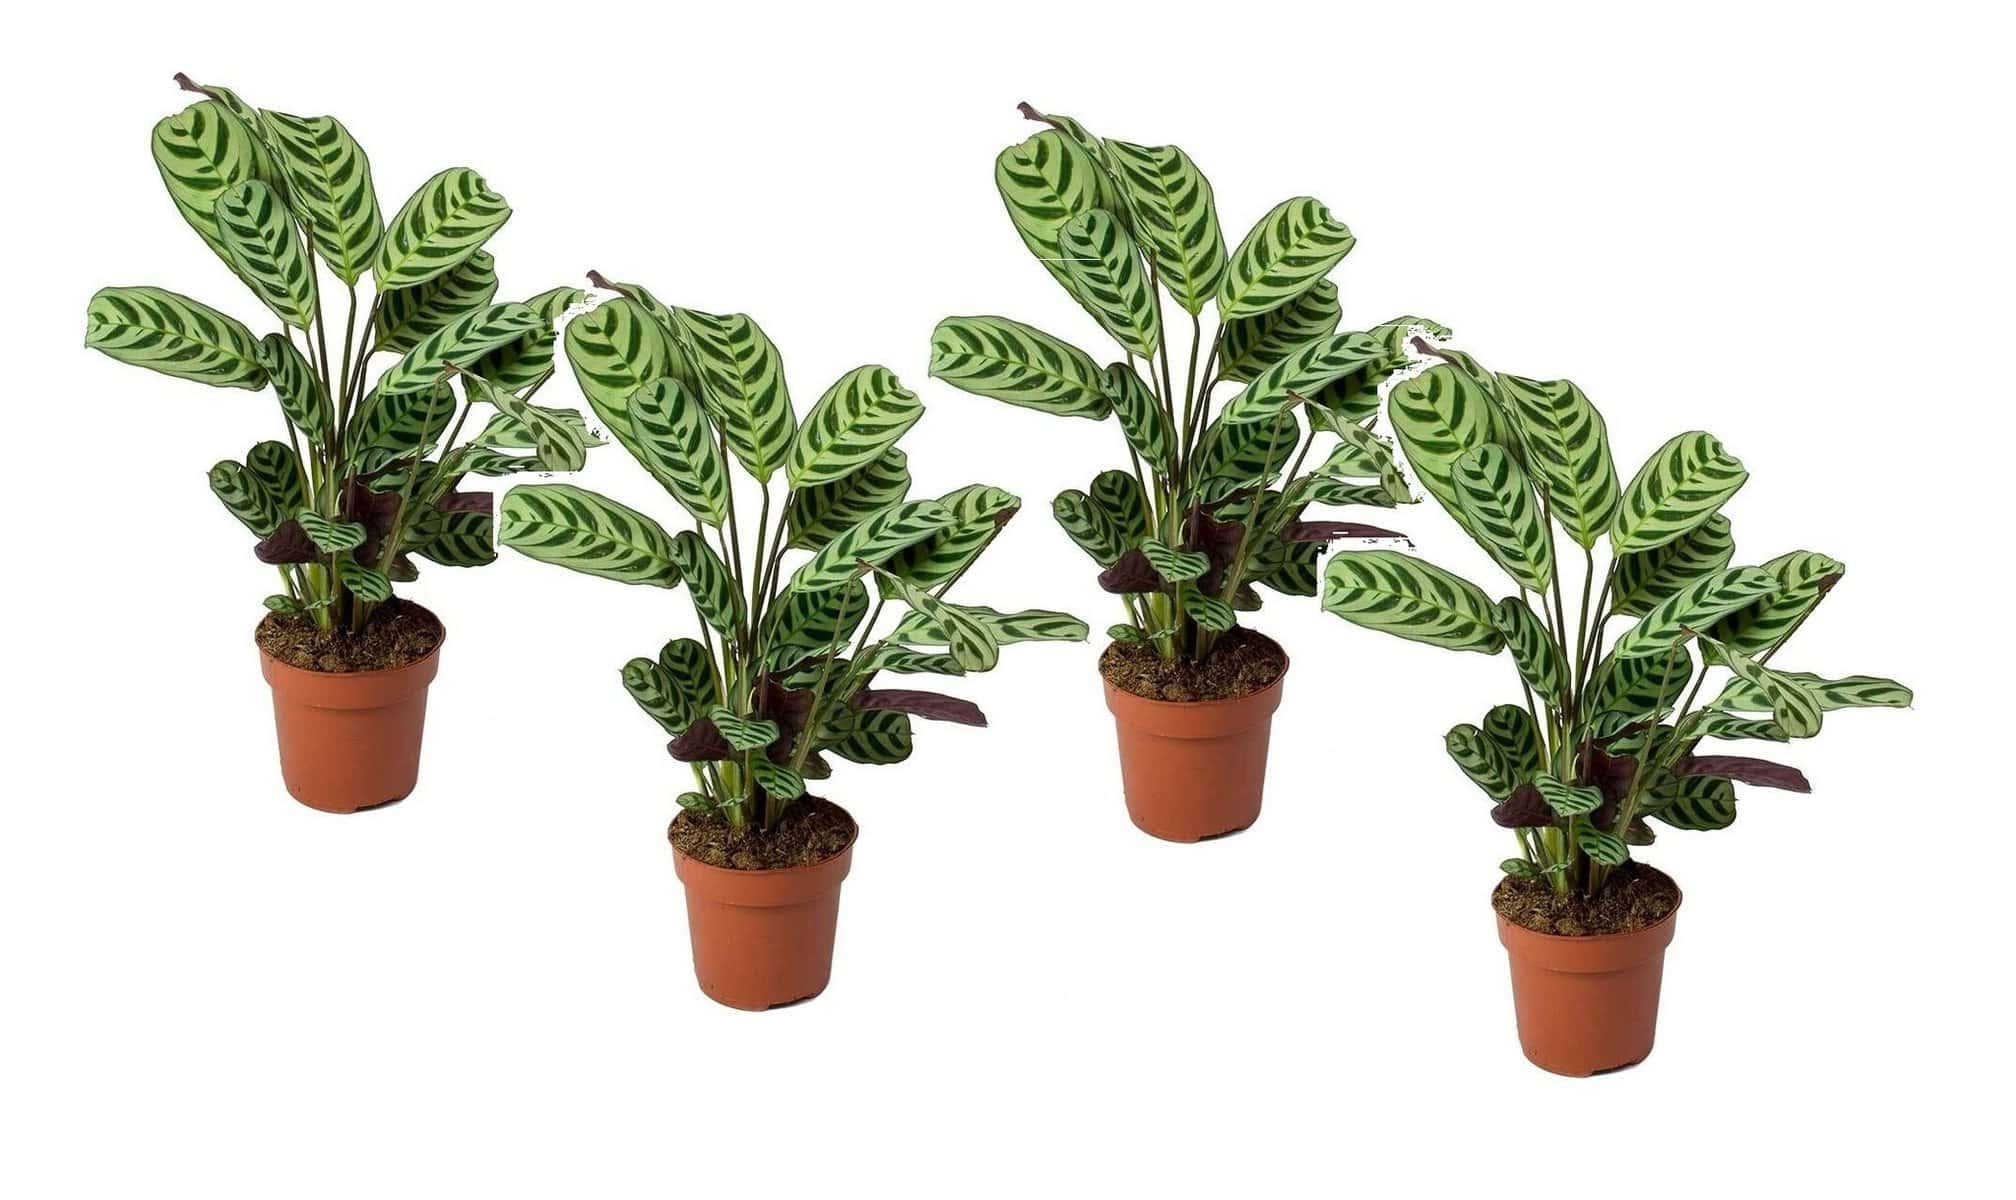 Ctenanthe'gebedsplant'- Set van 4 - Burle-marxii - Pot 12cm - Hoogte 25-40cm bezorgen via Florastore